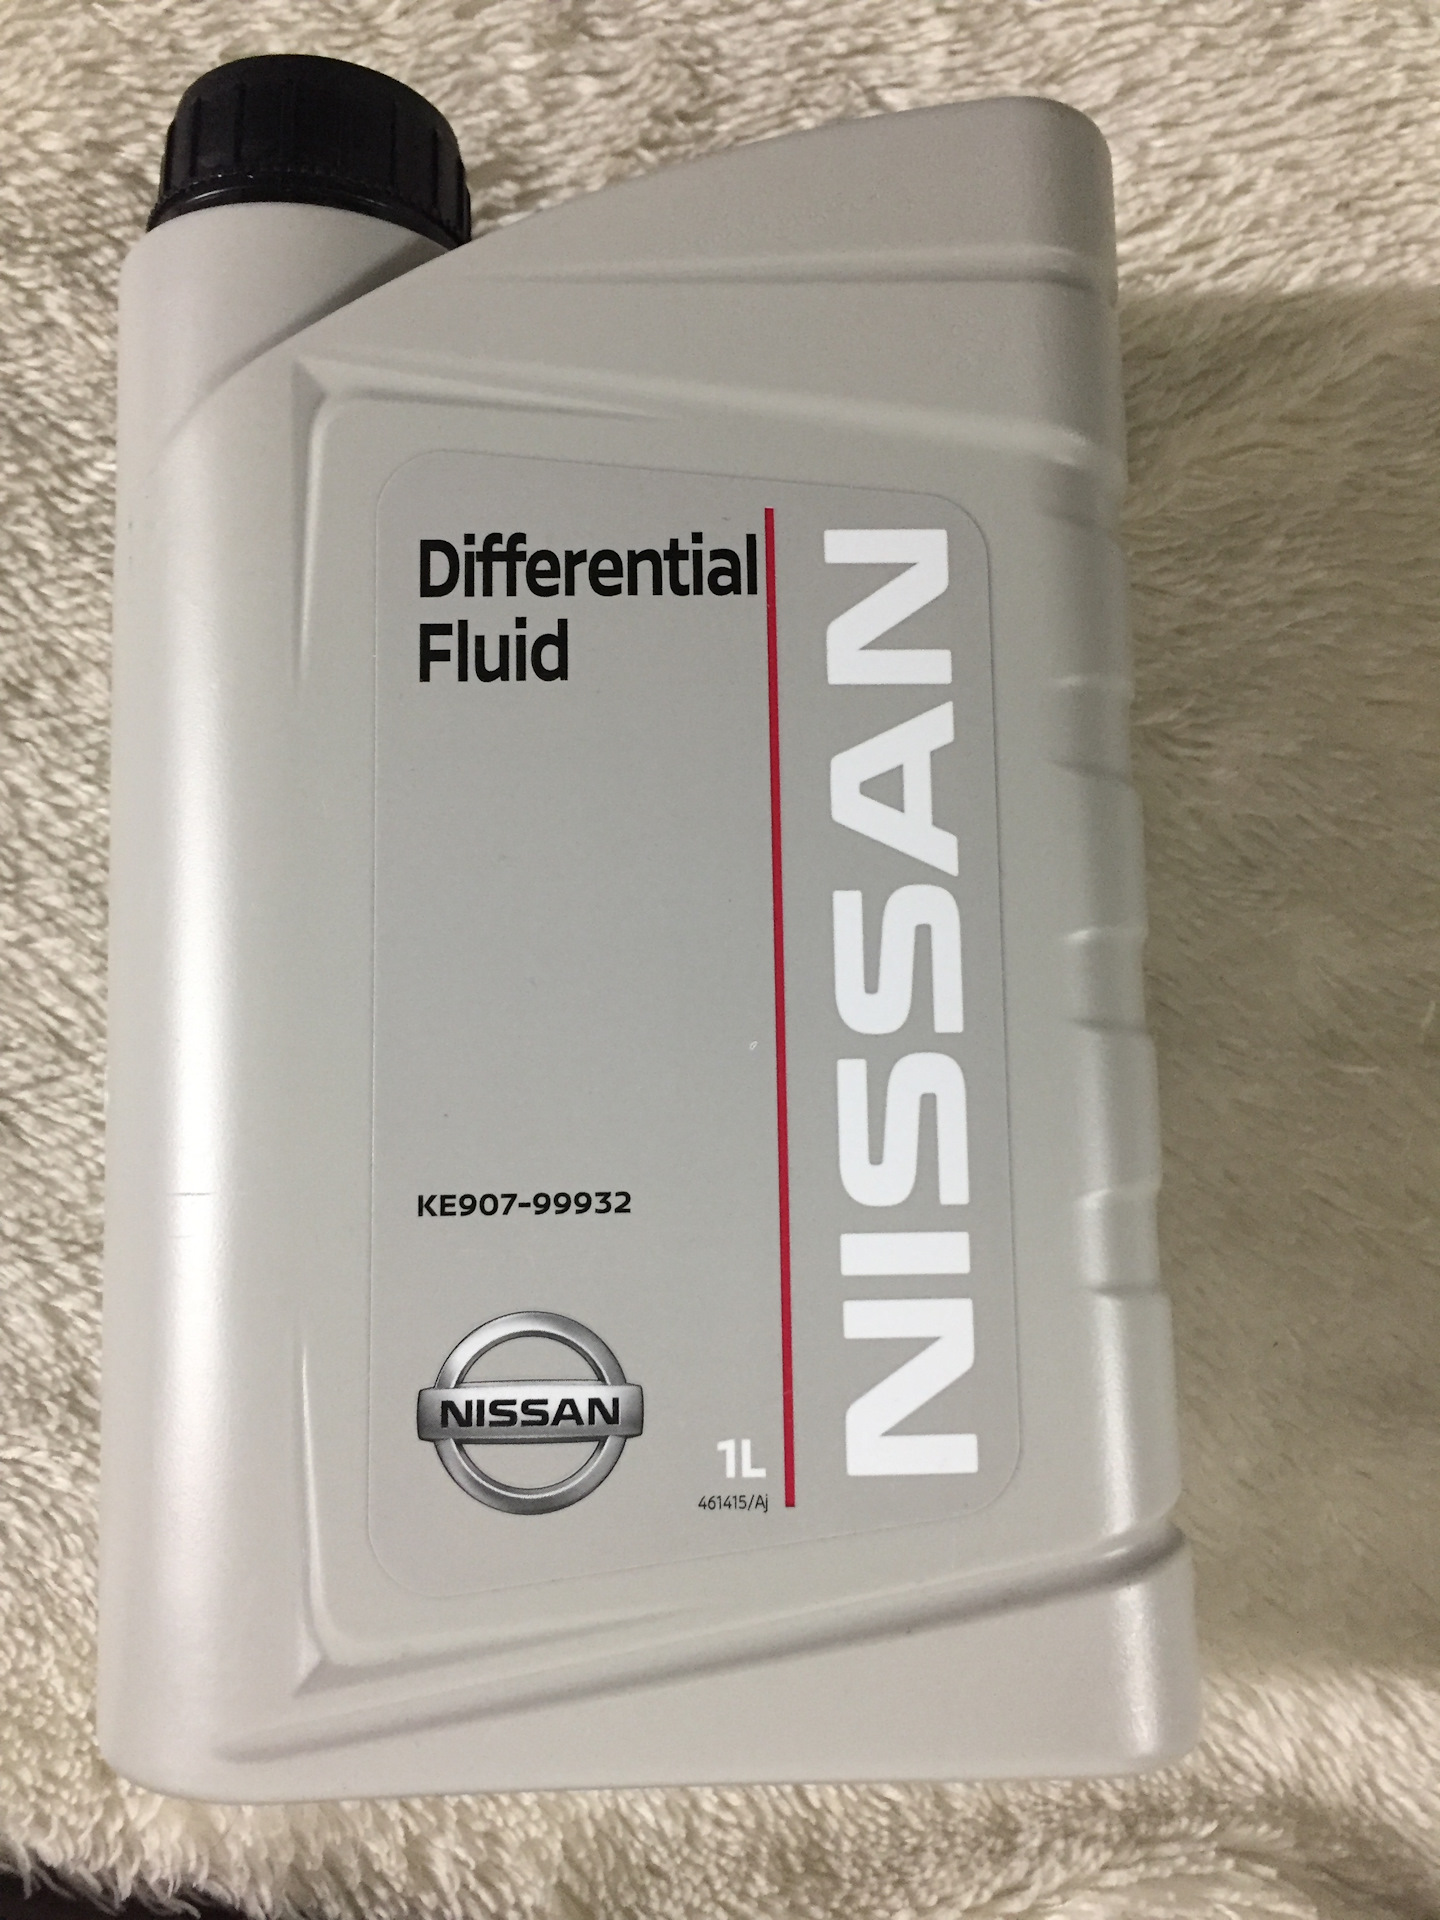 Масло nissan atf matic. ATF Nissan matic j 5л. Nissan ATF matic j Fluid. Nissan Differential Fluid(ke907-99932). Ke907-99932 gl-5 80w90.